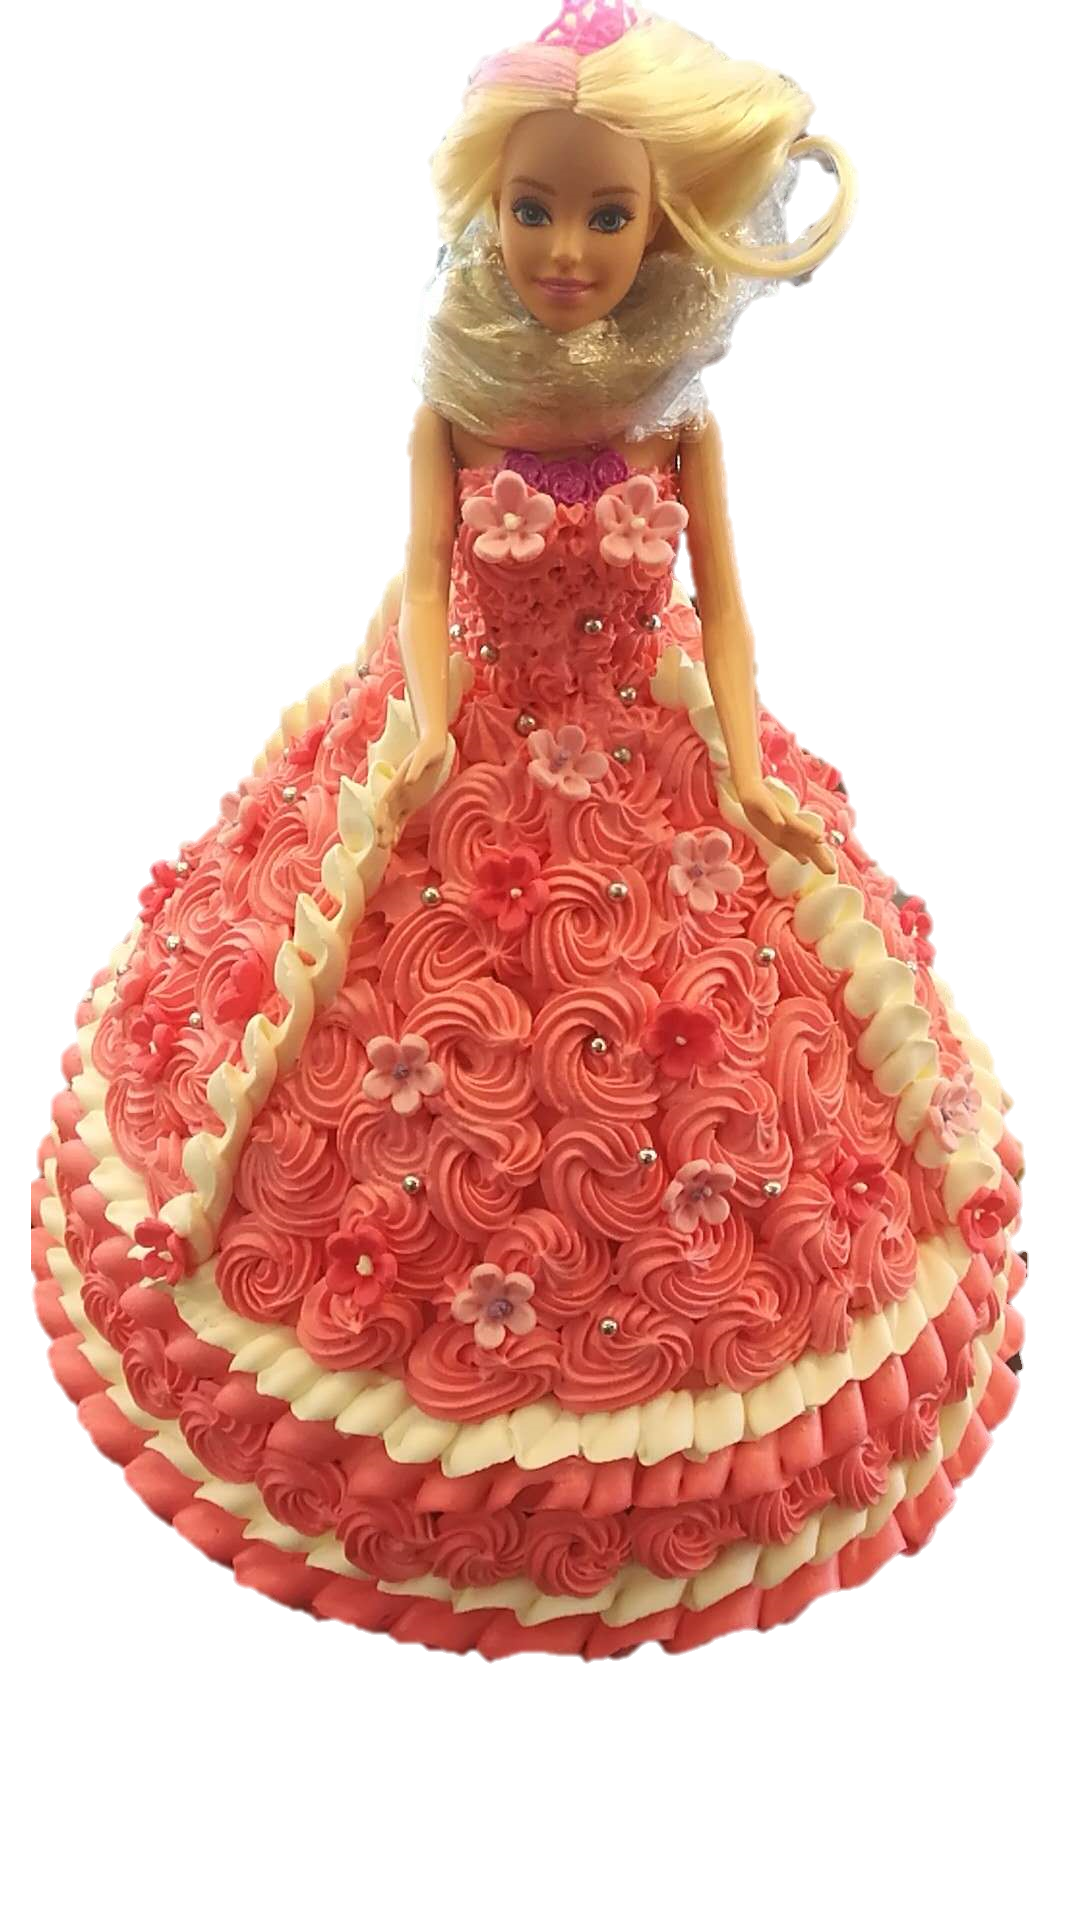 Best Doll Cake In Jaipur | Order Online